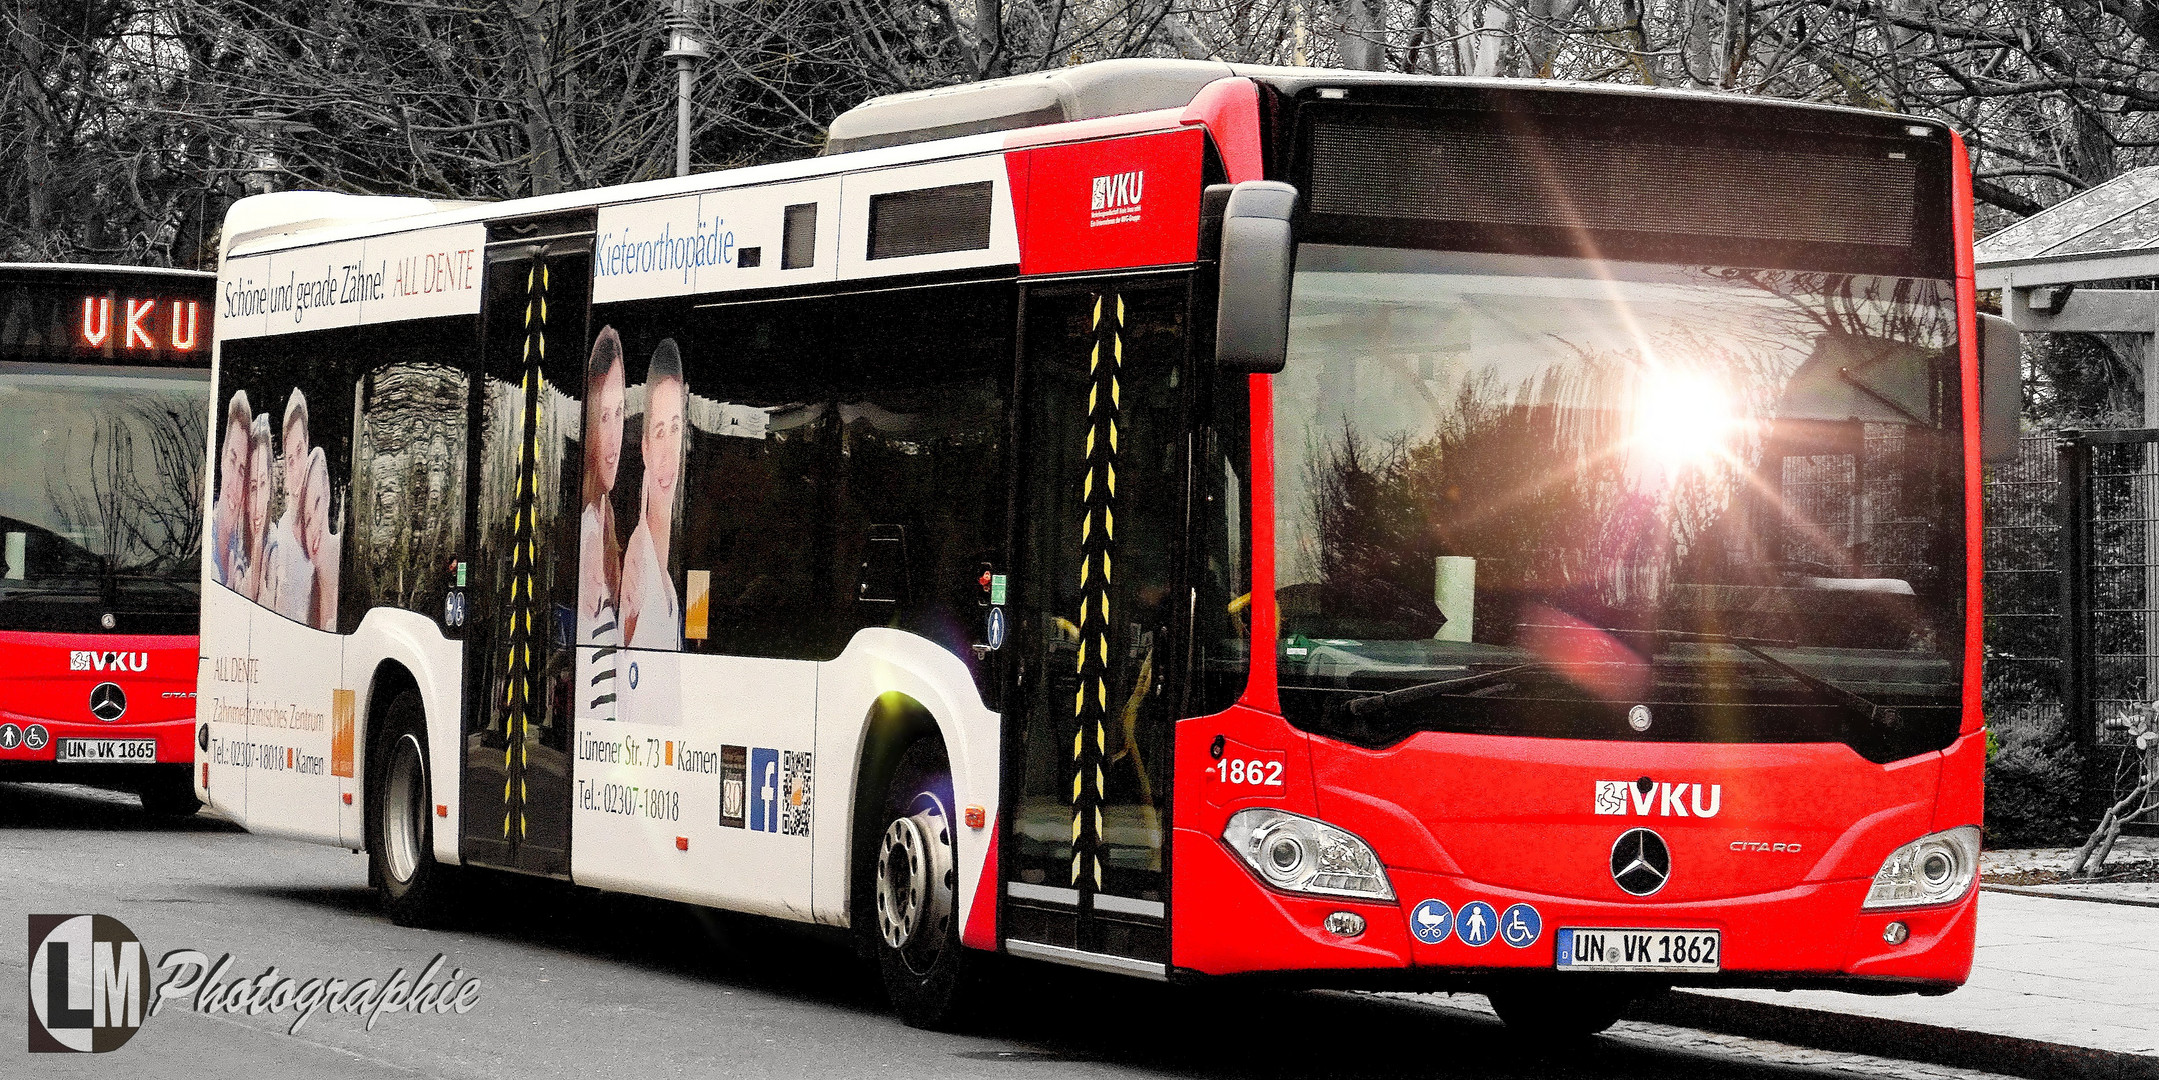 StreetArt_Bus in Glanzlicht_Bergkamen_20190404_LM